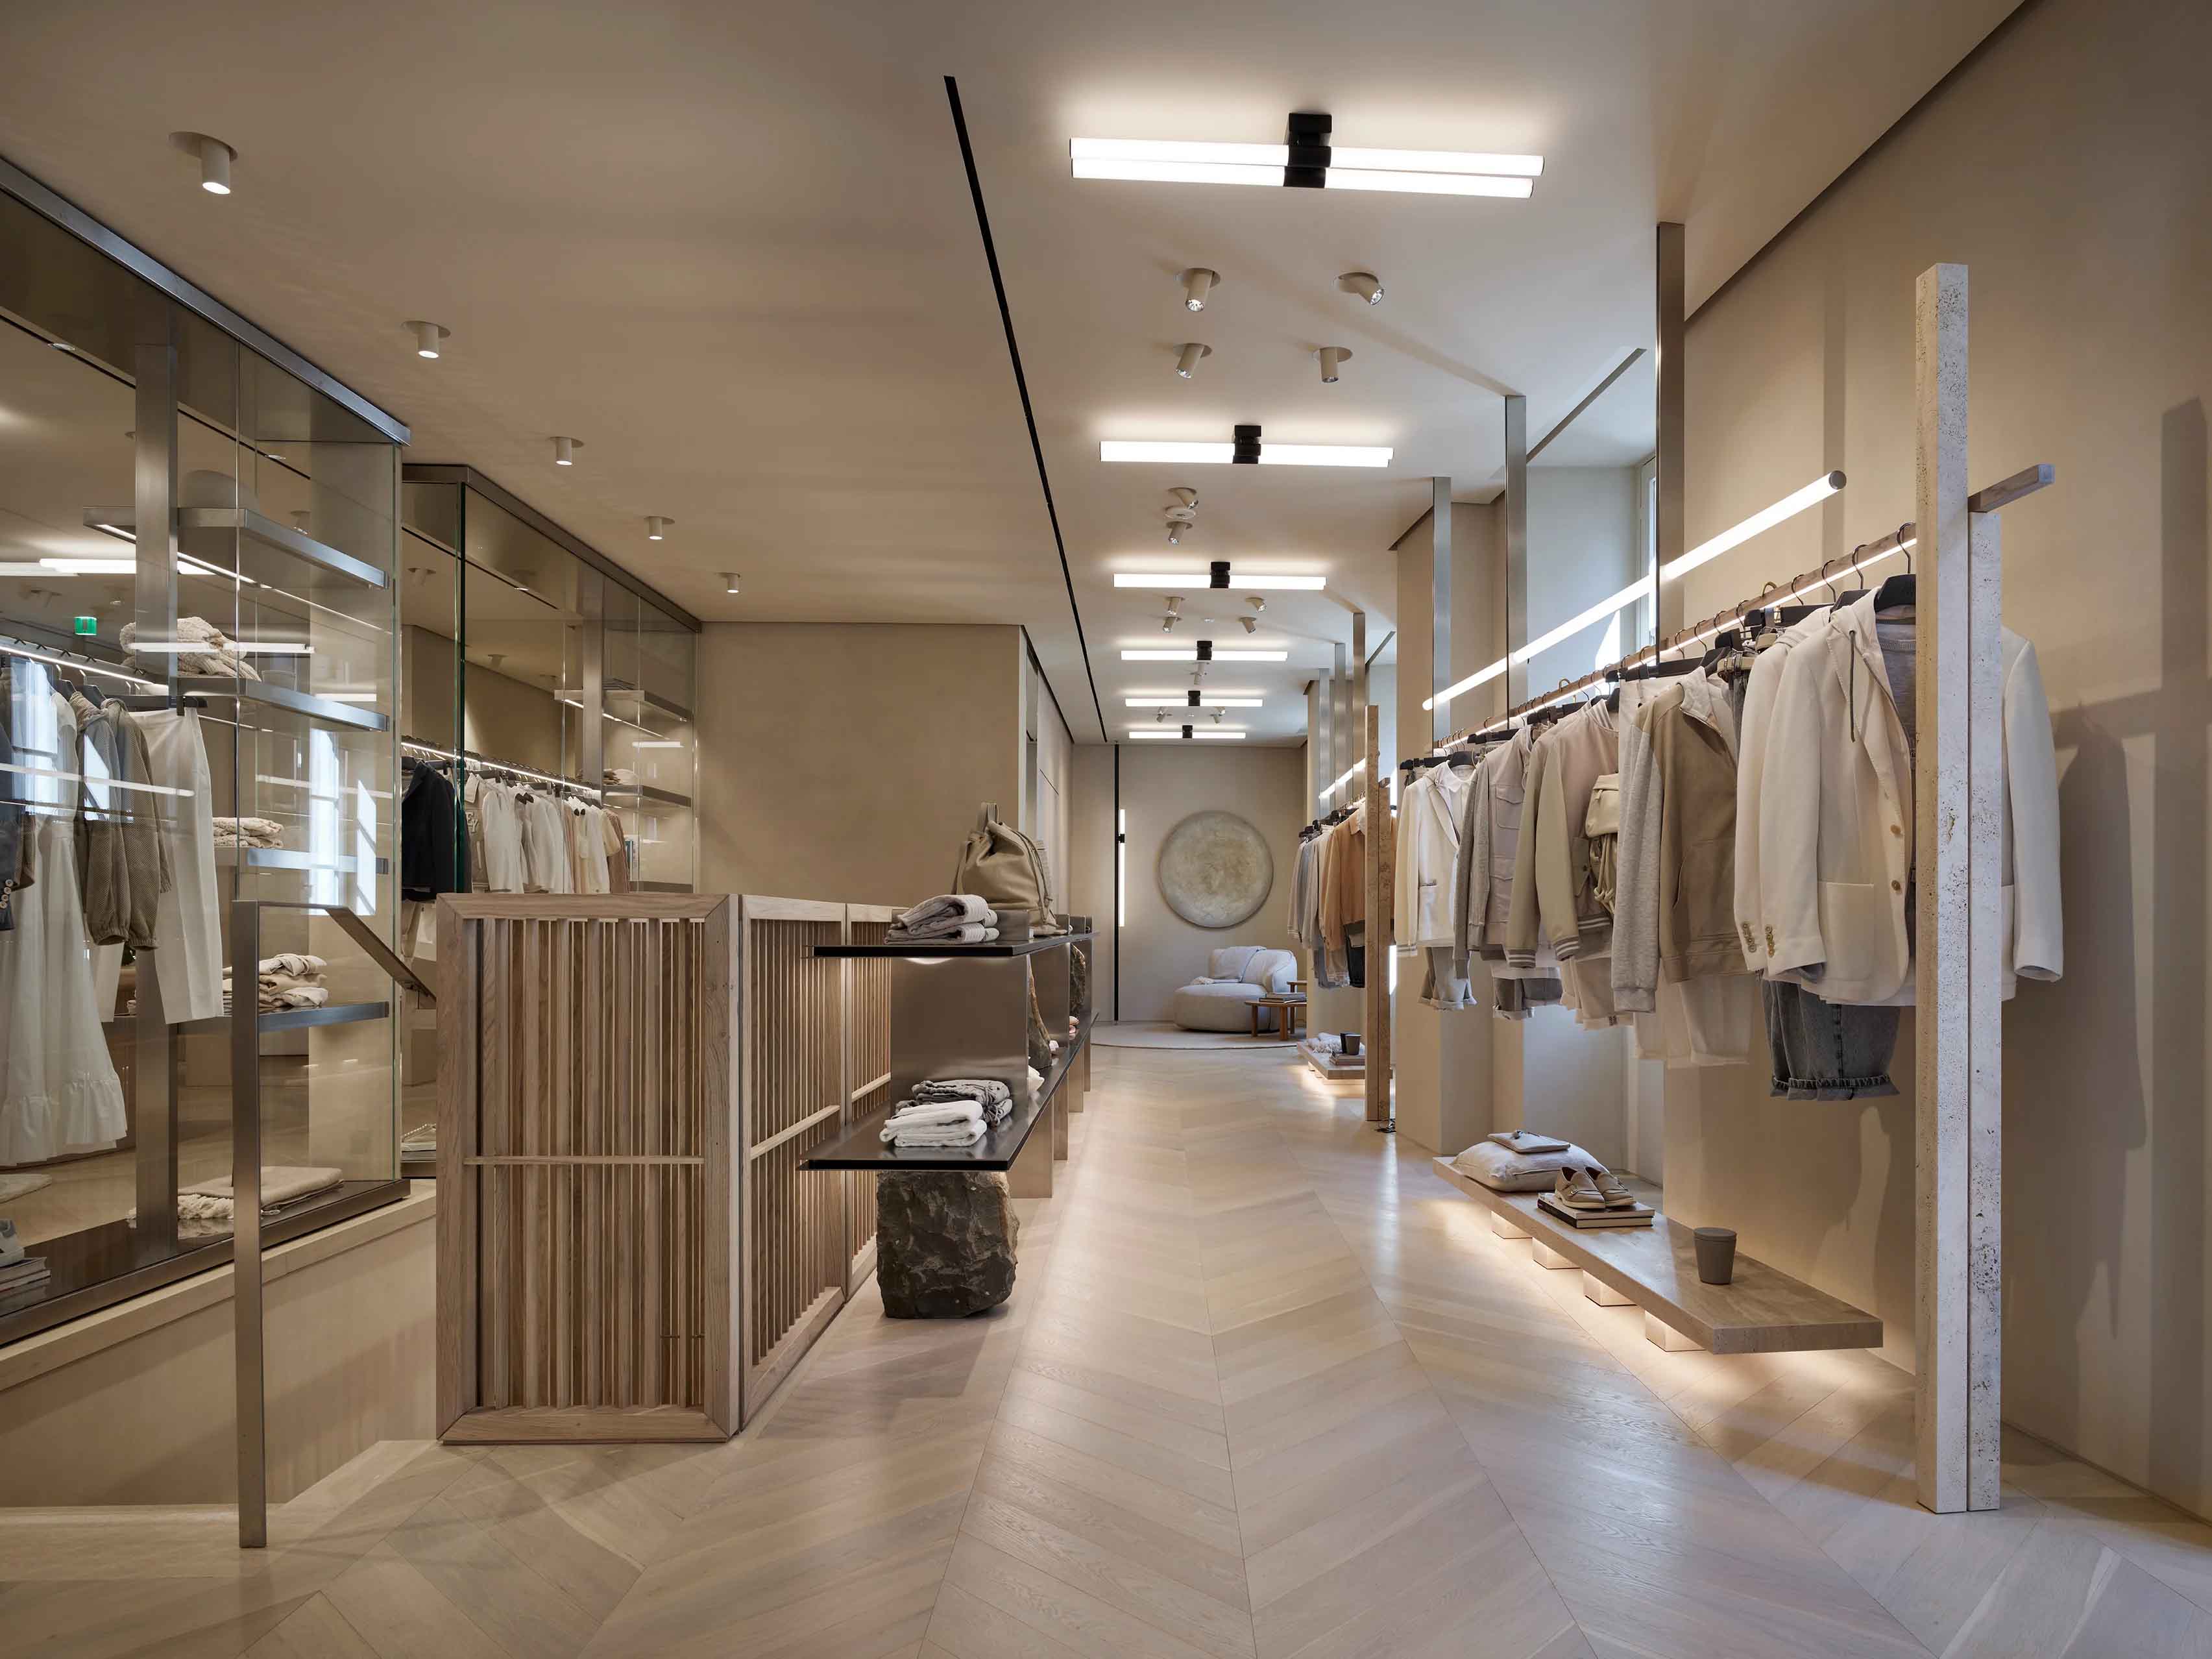 Parisotto+Formenton,意大利,米蘭,服裝店設計案例,國外服裝店設計,Eleventy服裝品牌店,服裝店設計案例,零售店設計,男裝店